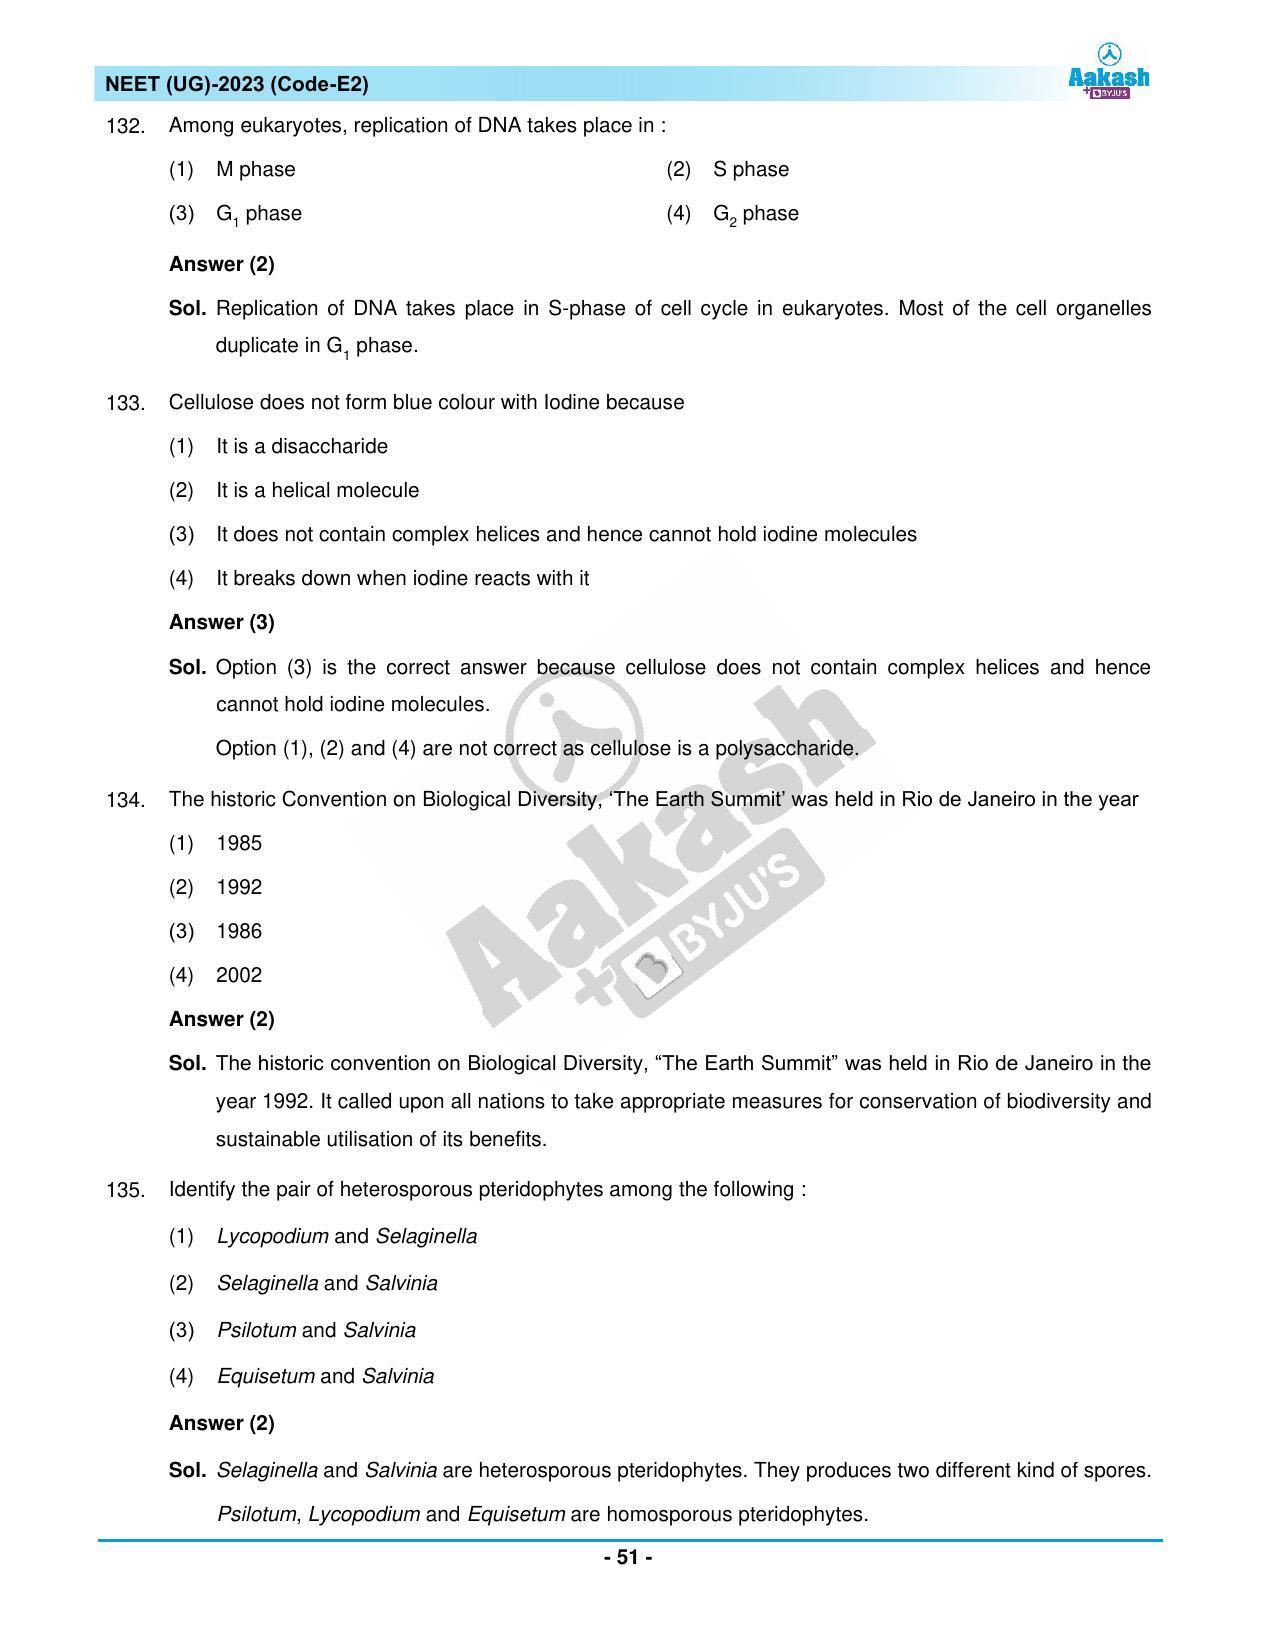 NEET 2023 Question Paper E2 - Page 51